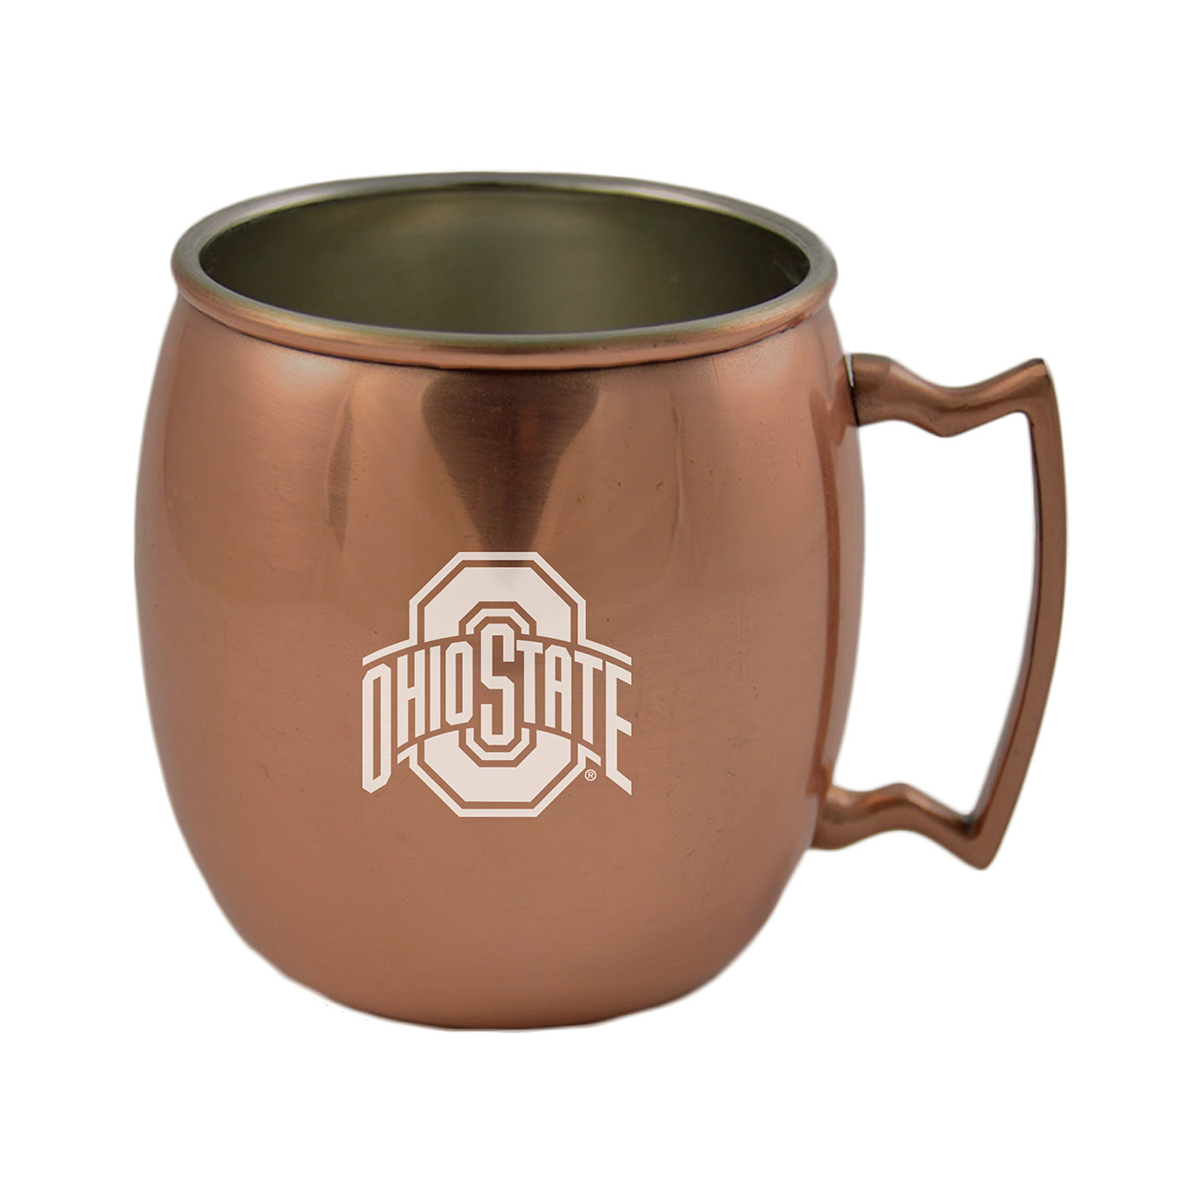 copper mug Ohio State University logo